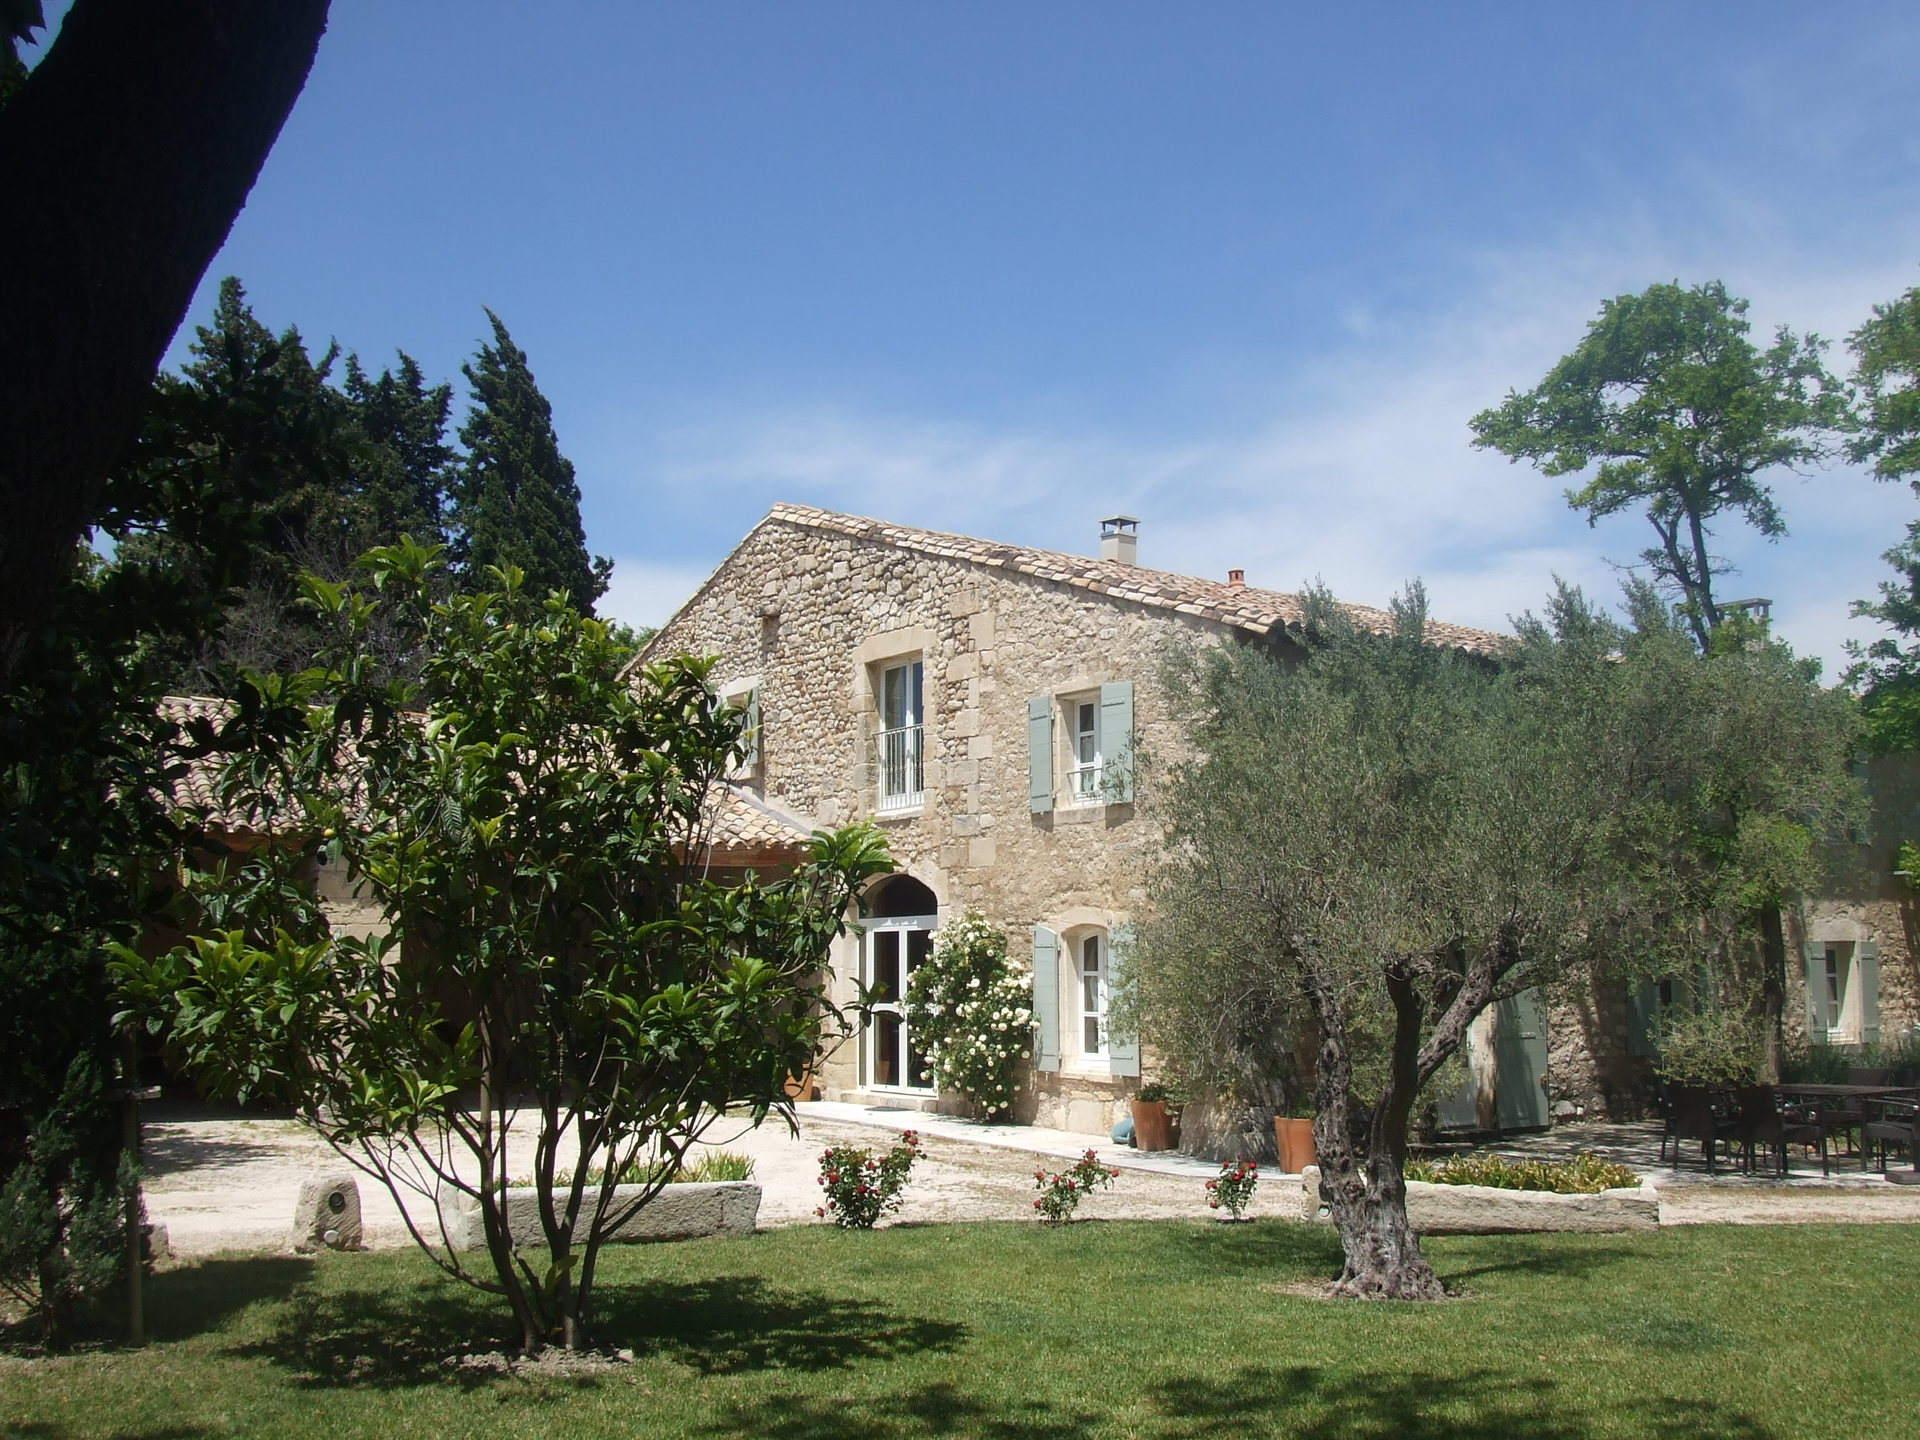 Prestige Provençal Mas with private pool located in Saint Etienne du Grés, close to Saint Remy de Provence, in the Alpilles – 10/11 persons